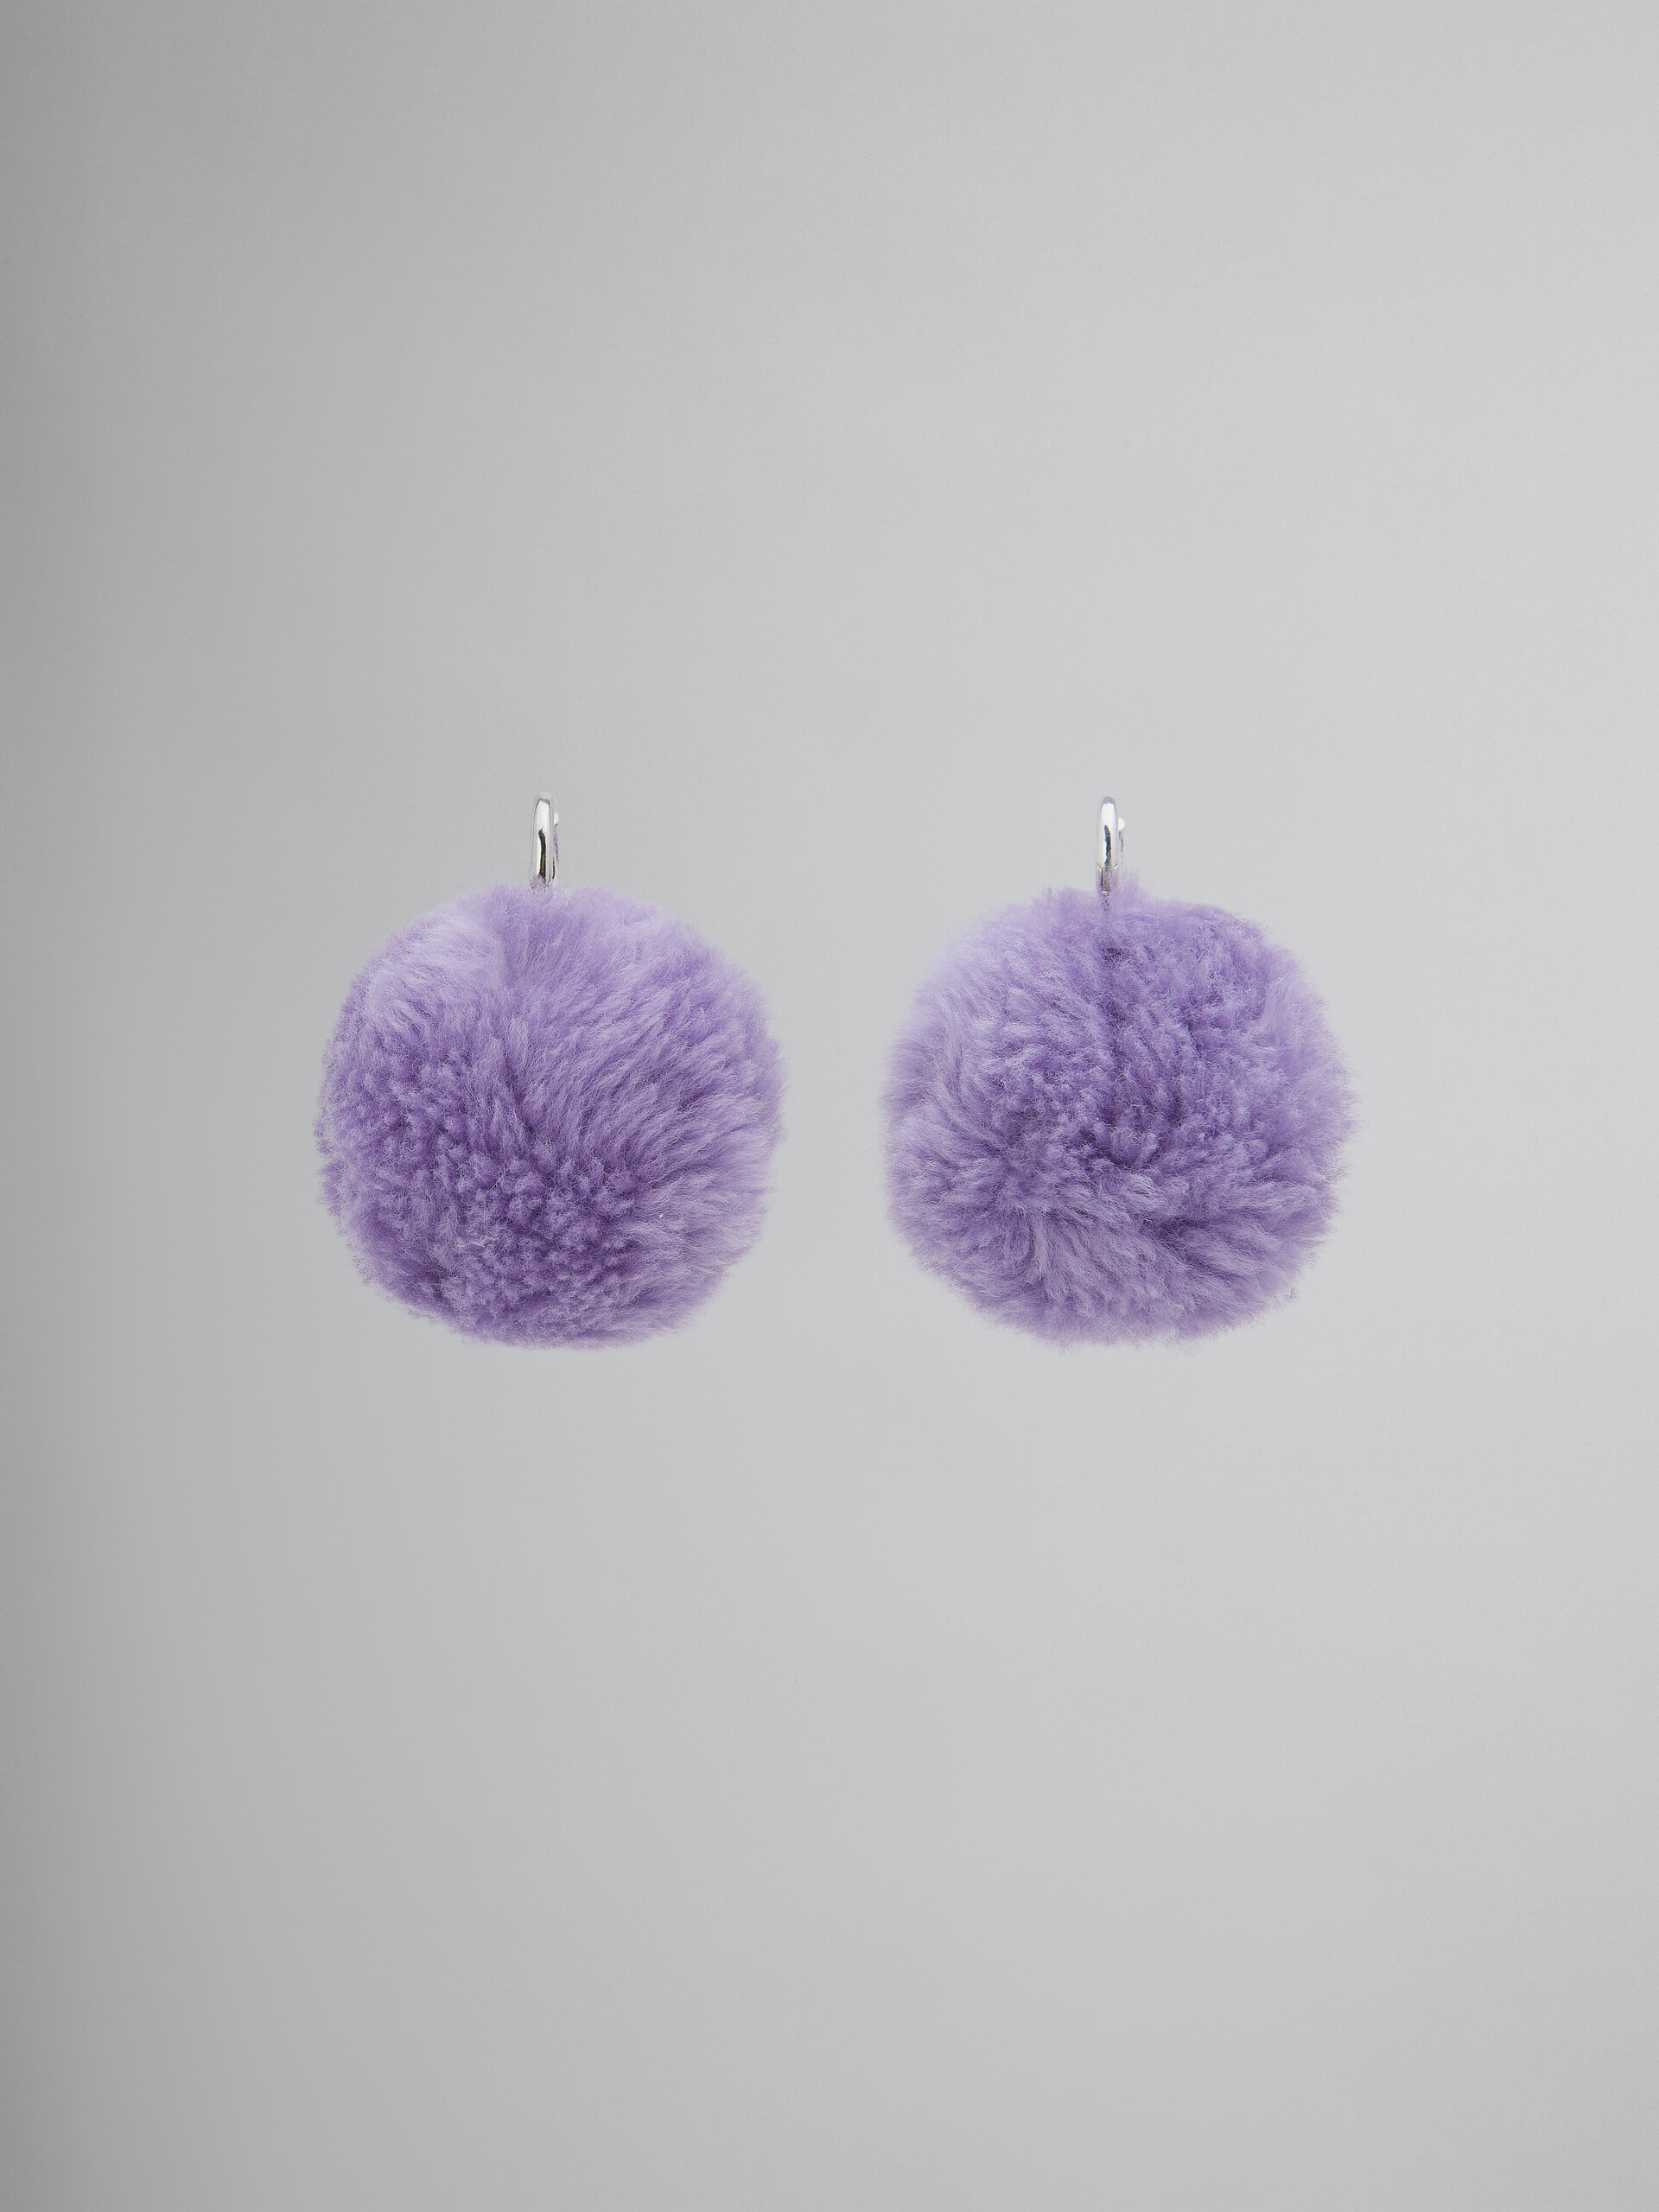 Boucles d’oreilles à pompons duveteux violets - Boucles d’oreilles - Image 1